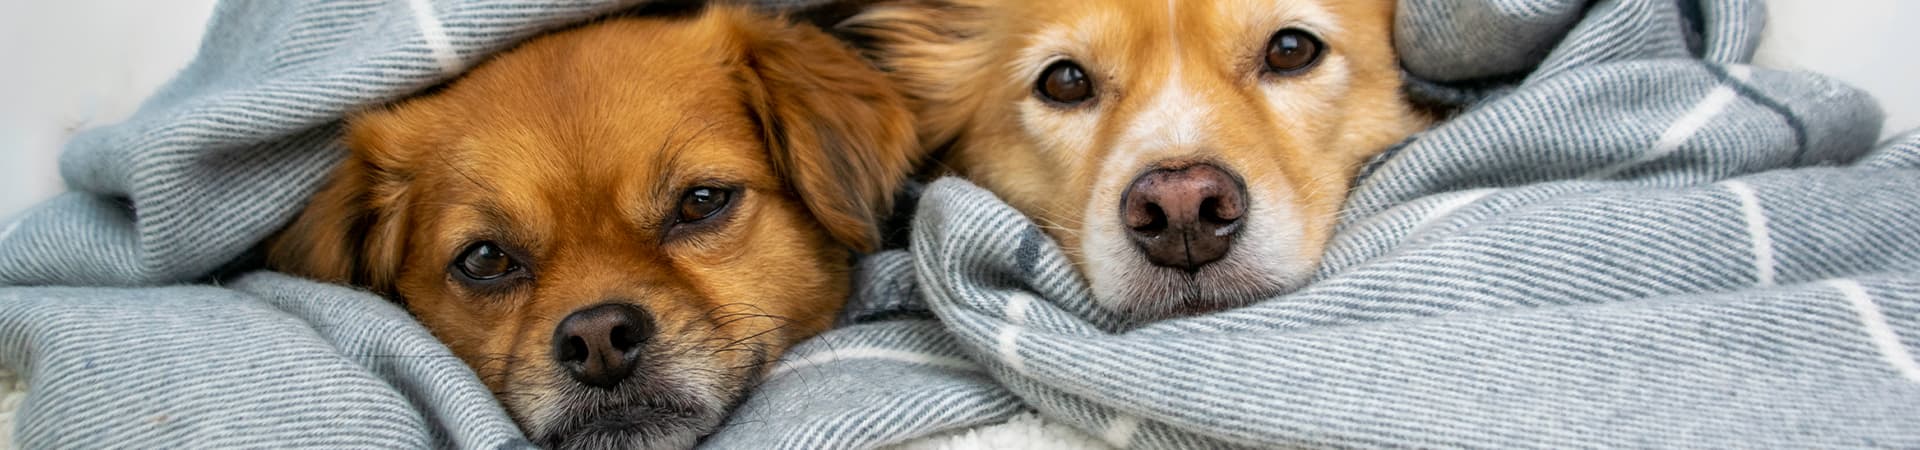 Zwei Hunde liegen in eine Decke eingekuschelt